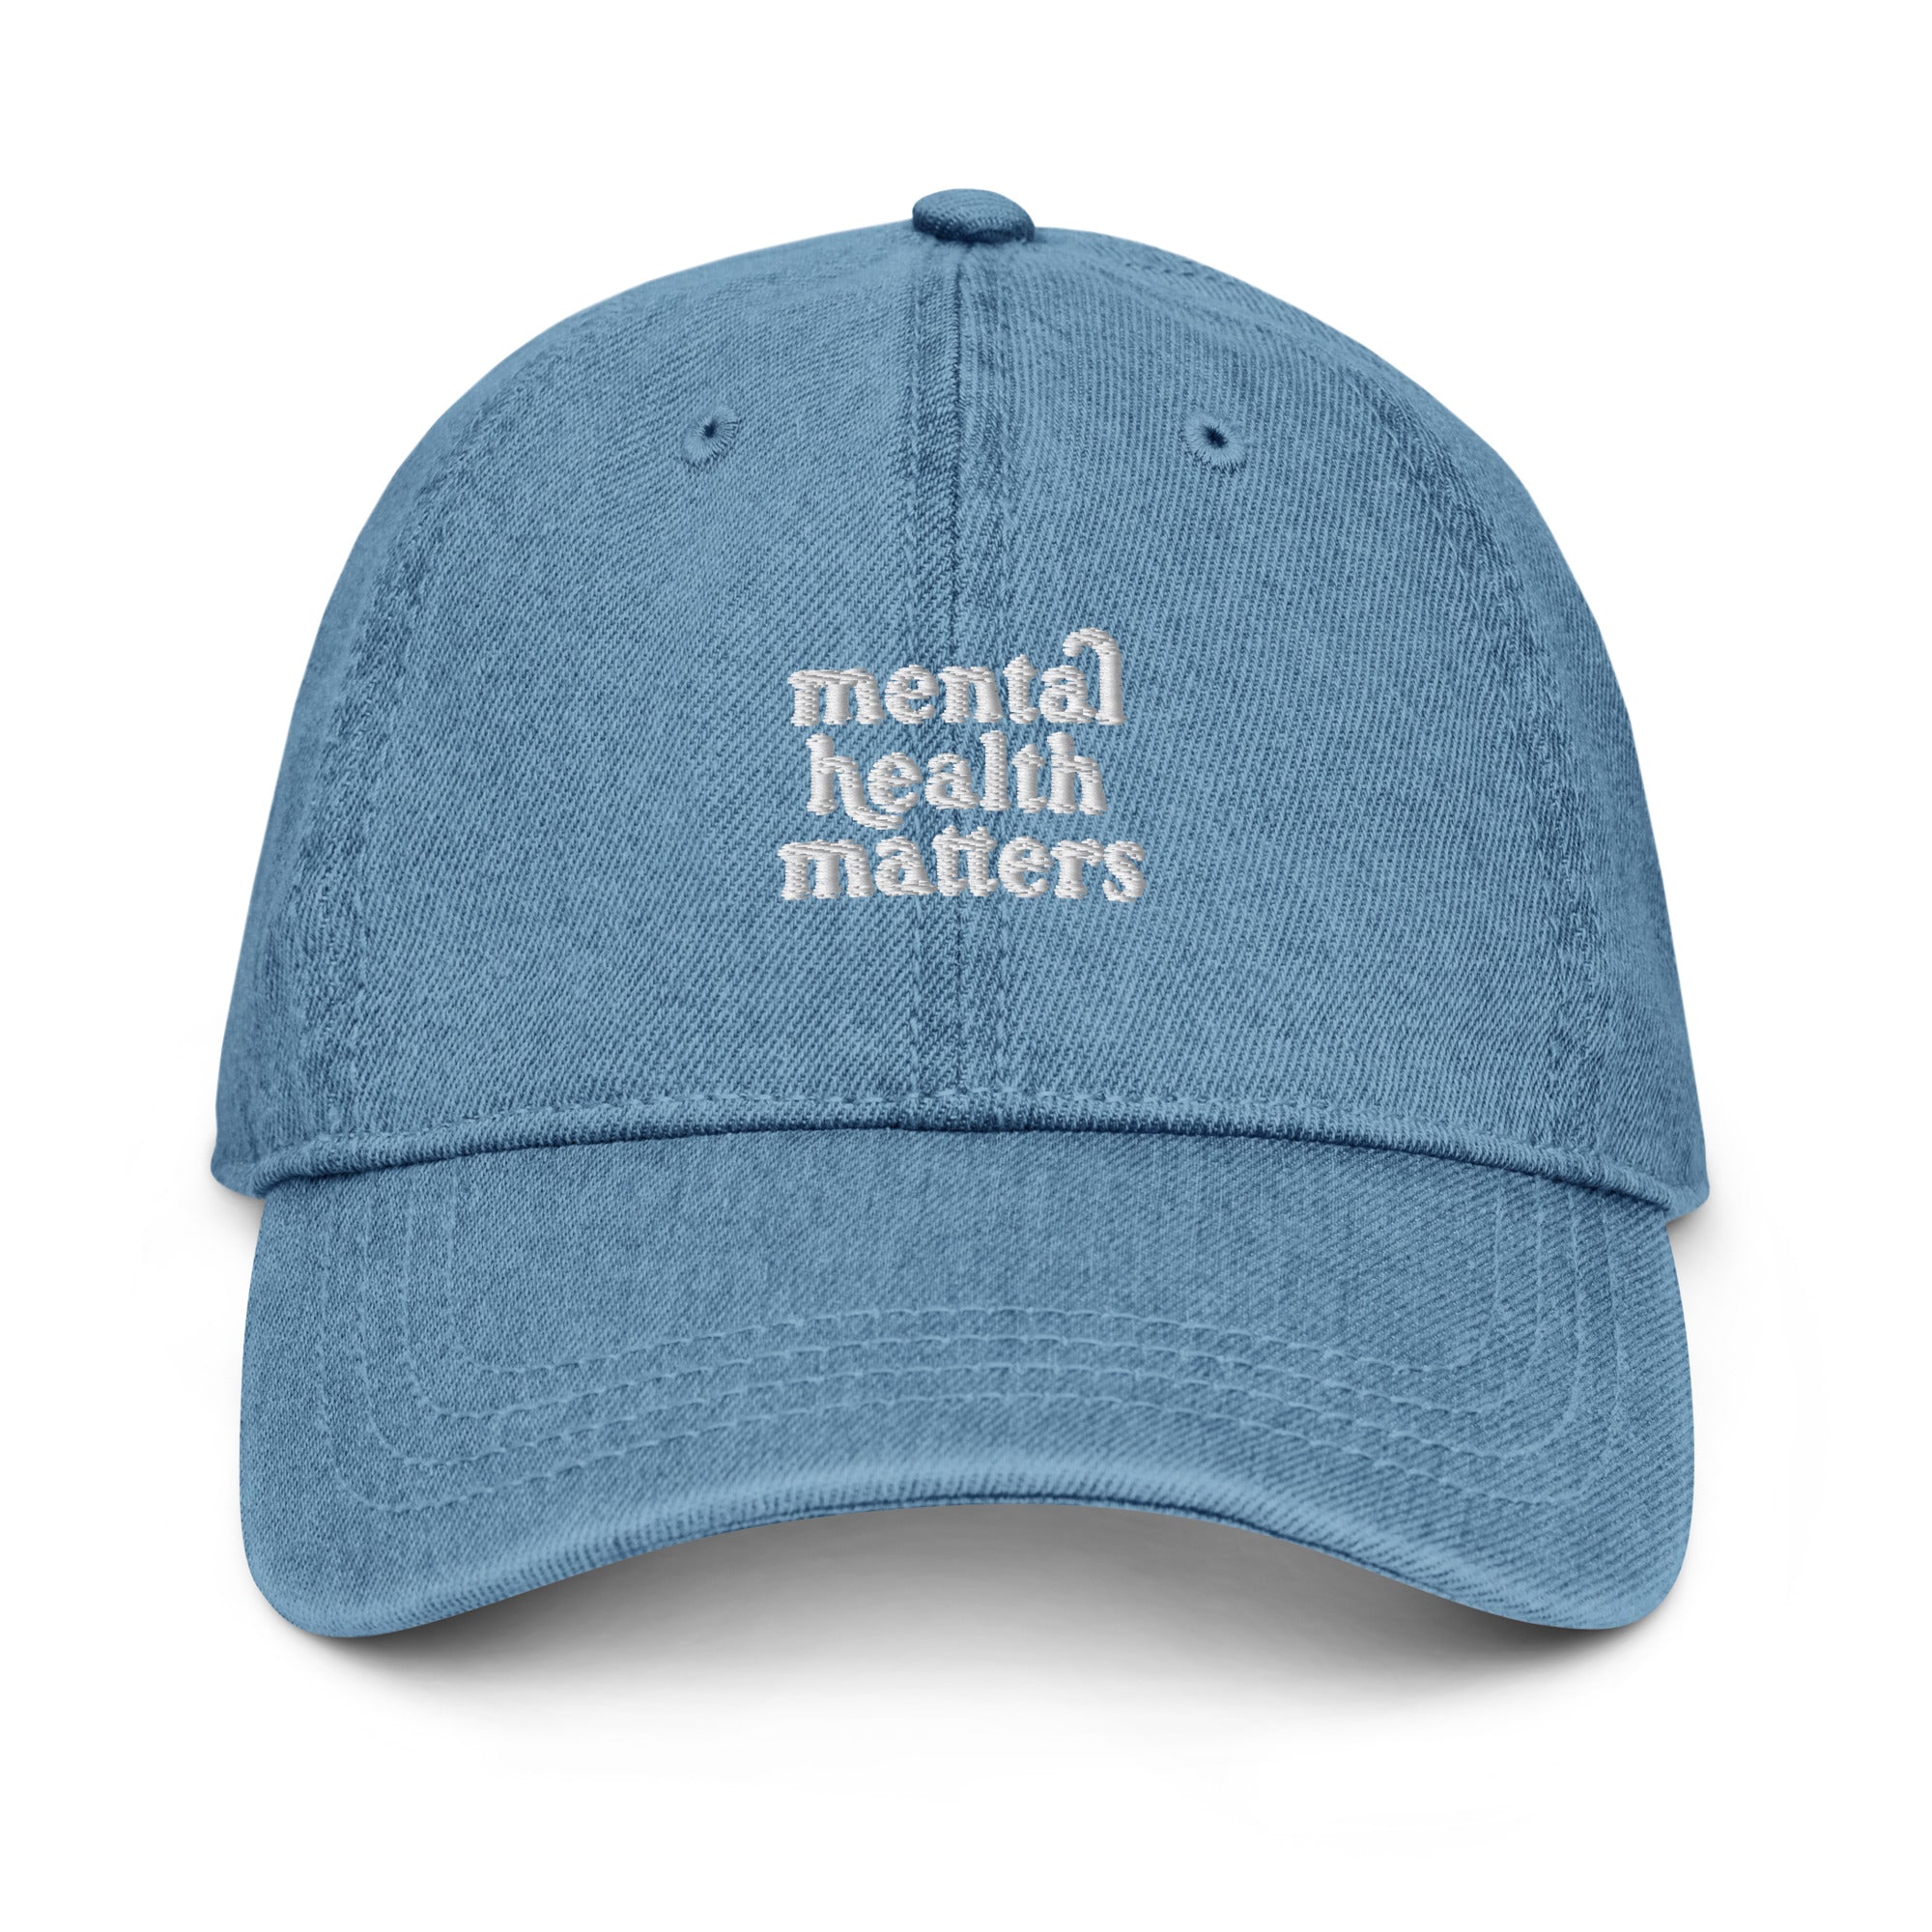 Mental Health Matters Denim Hat